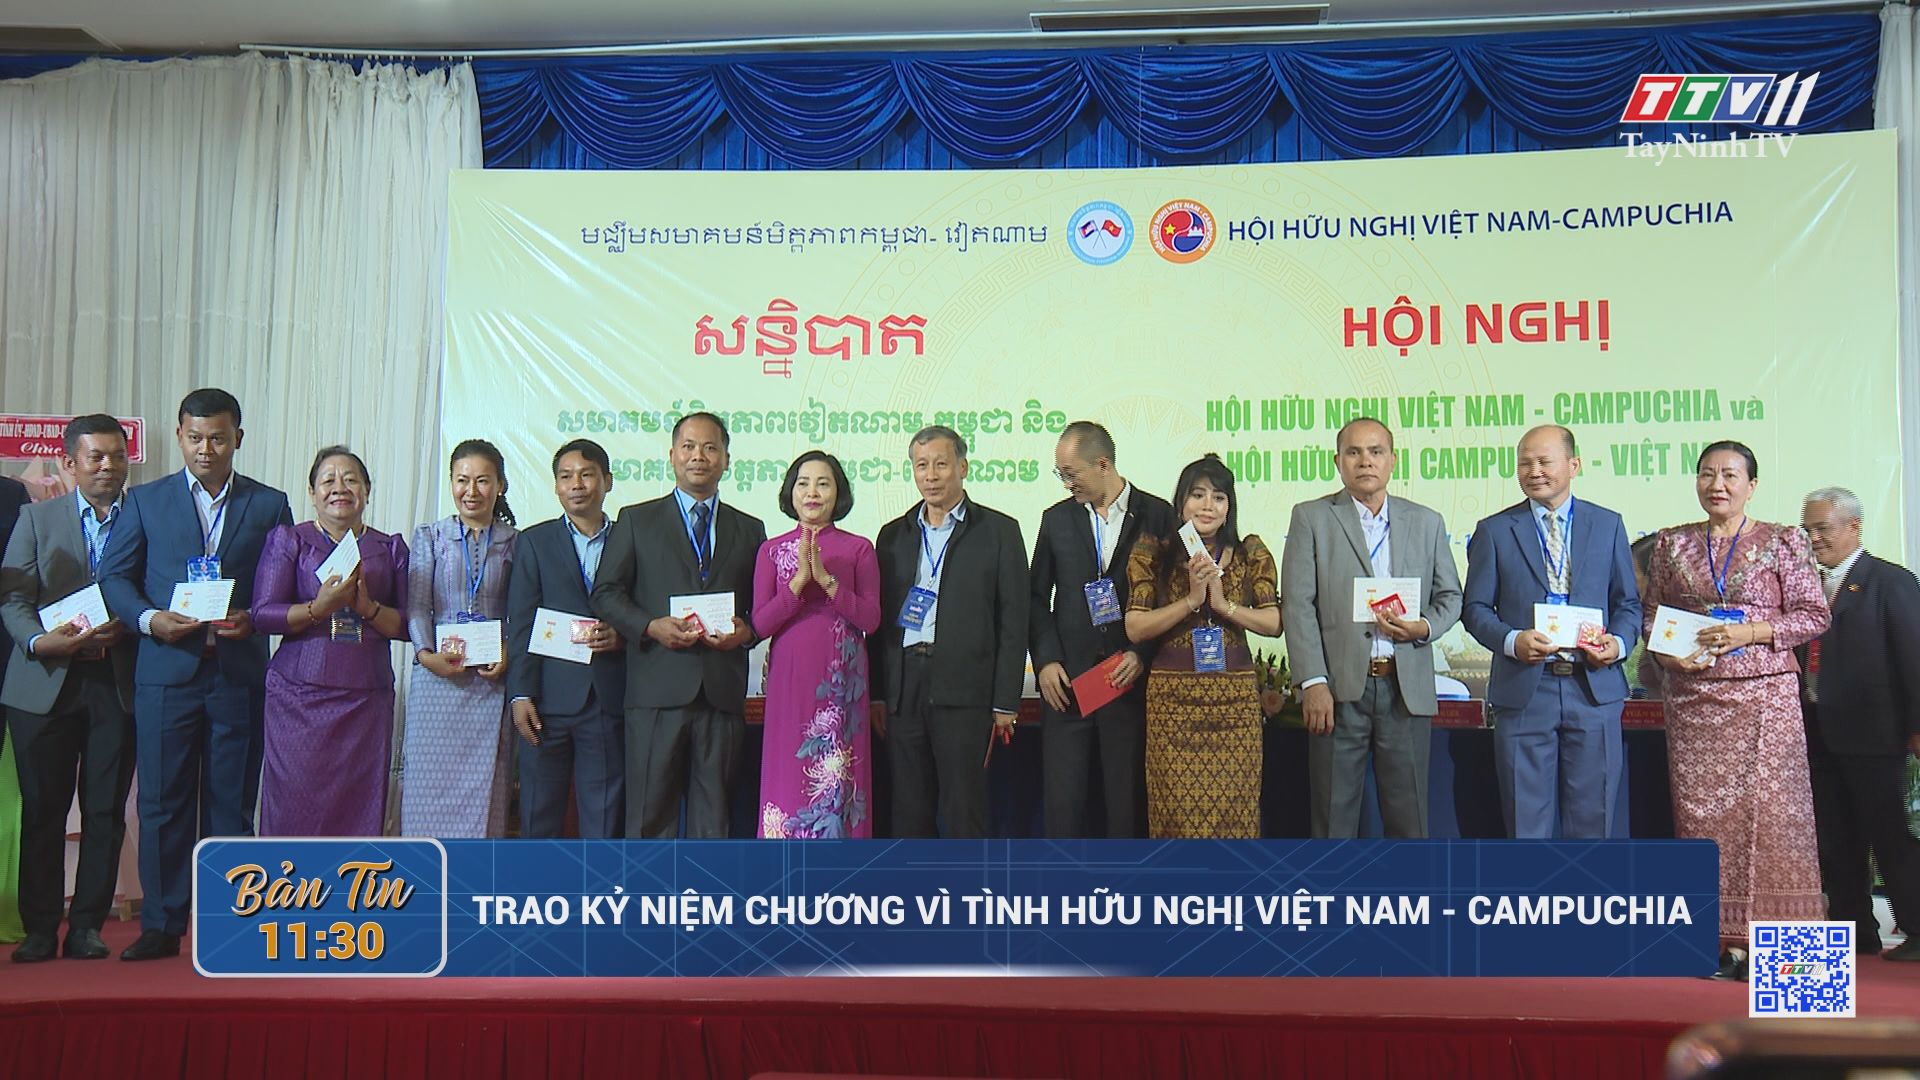 Trao kỷ niệm chương vì tình hữu nghị Việt Nam - Campuchia | TayNinhTV